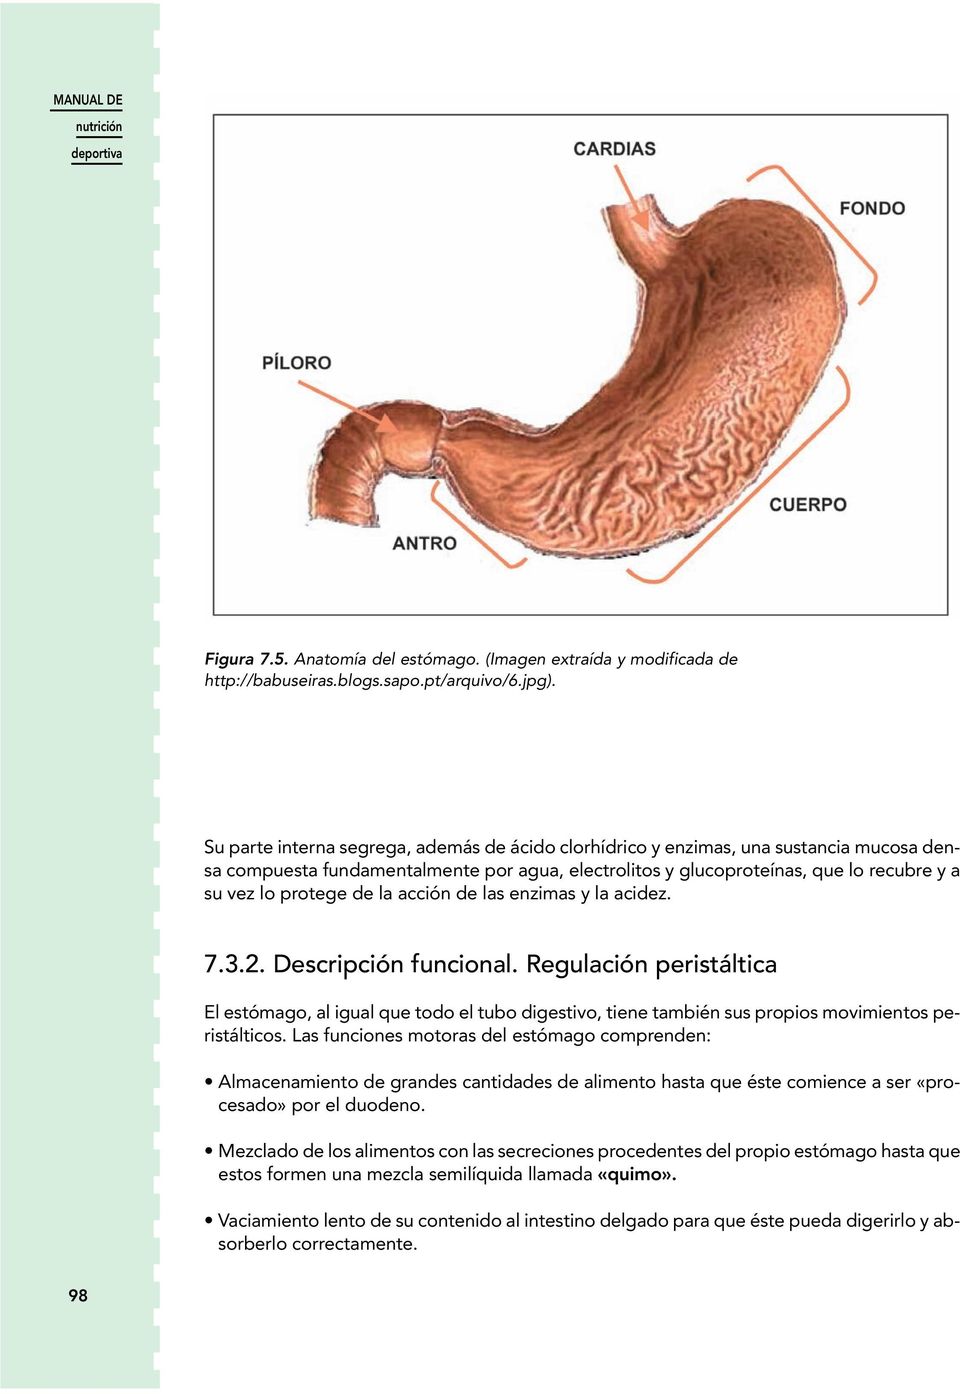 la acción de las enzimas y la acidez. 7.3.2. Descripción funcional. Regulación peristáltica El estómago, al igual que todo el tubo digestivo, tiene también sus propios movimientos peristálticos.